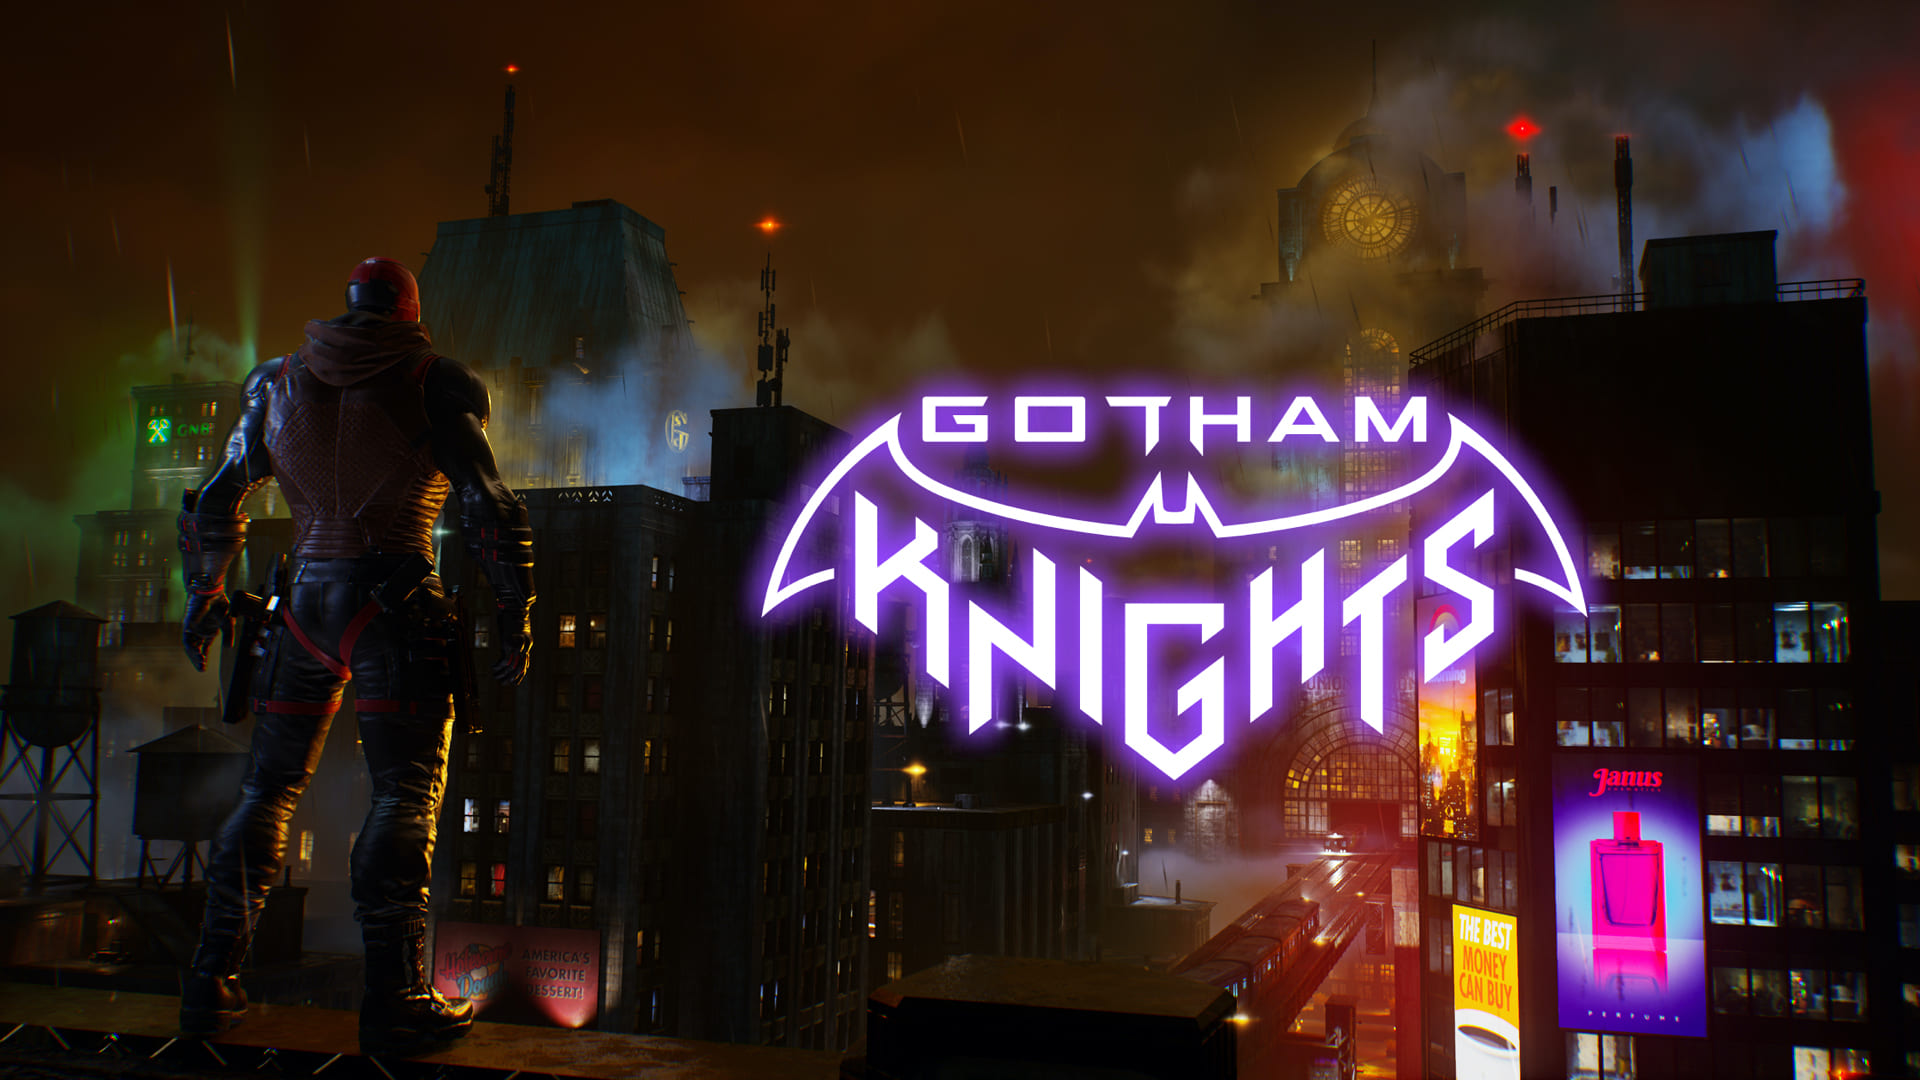 Gotham knights steam